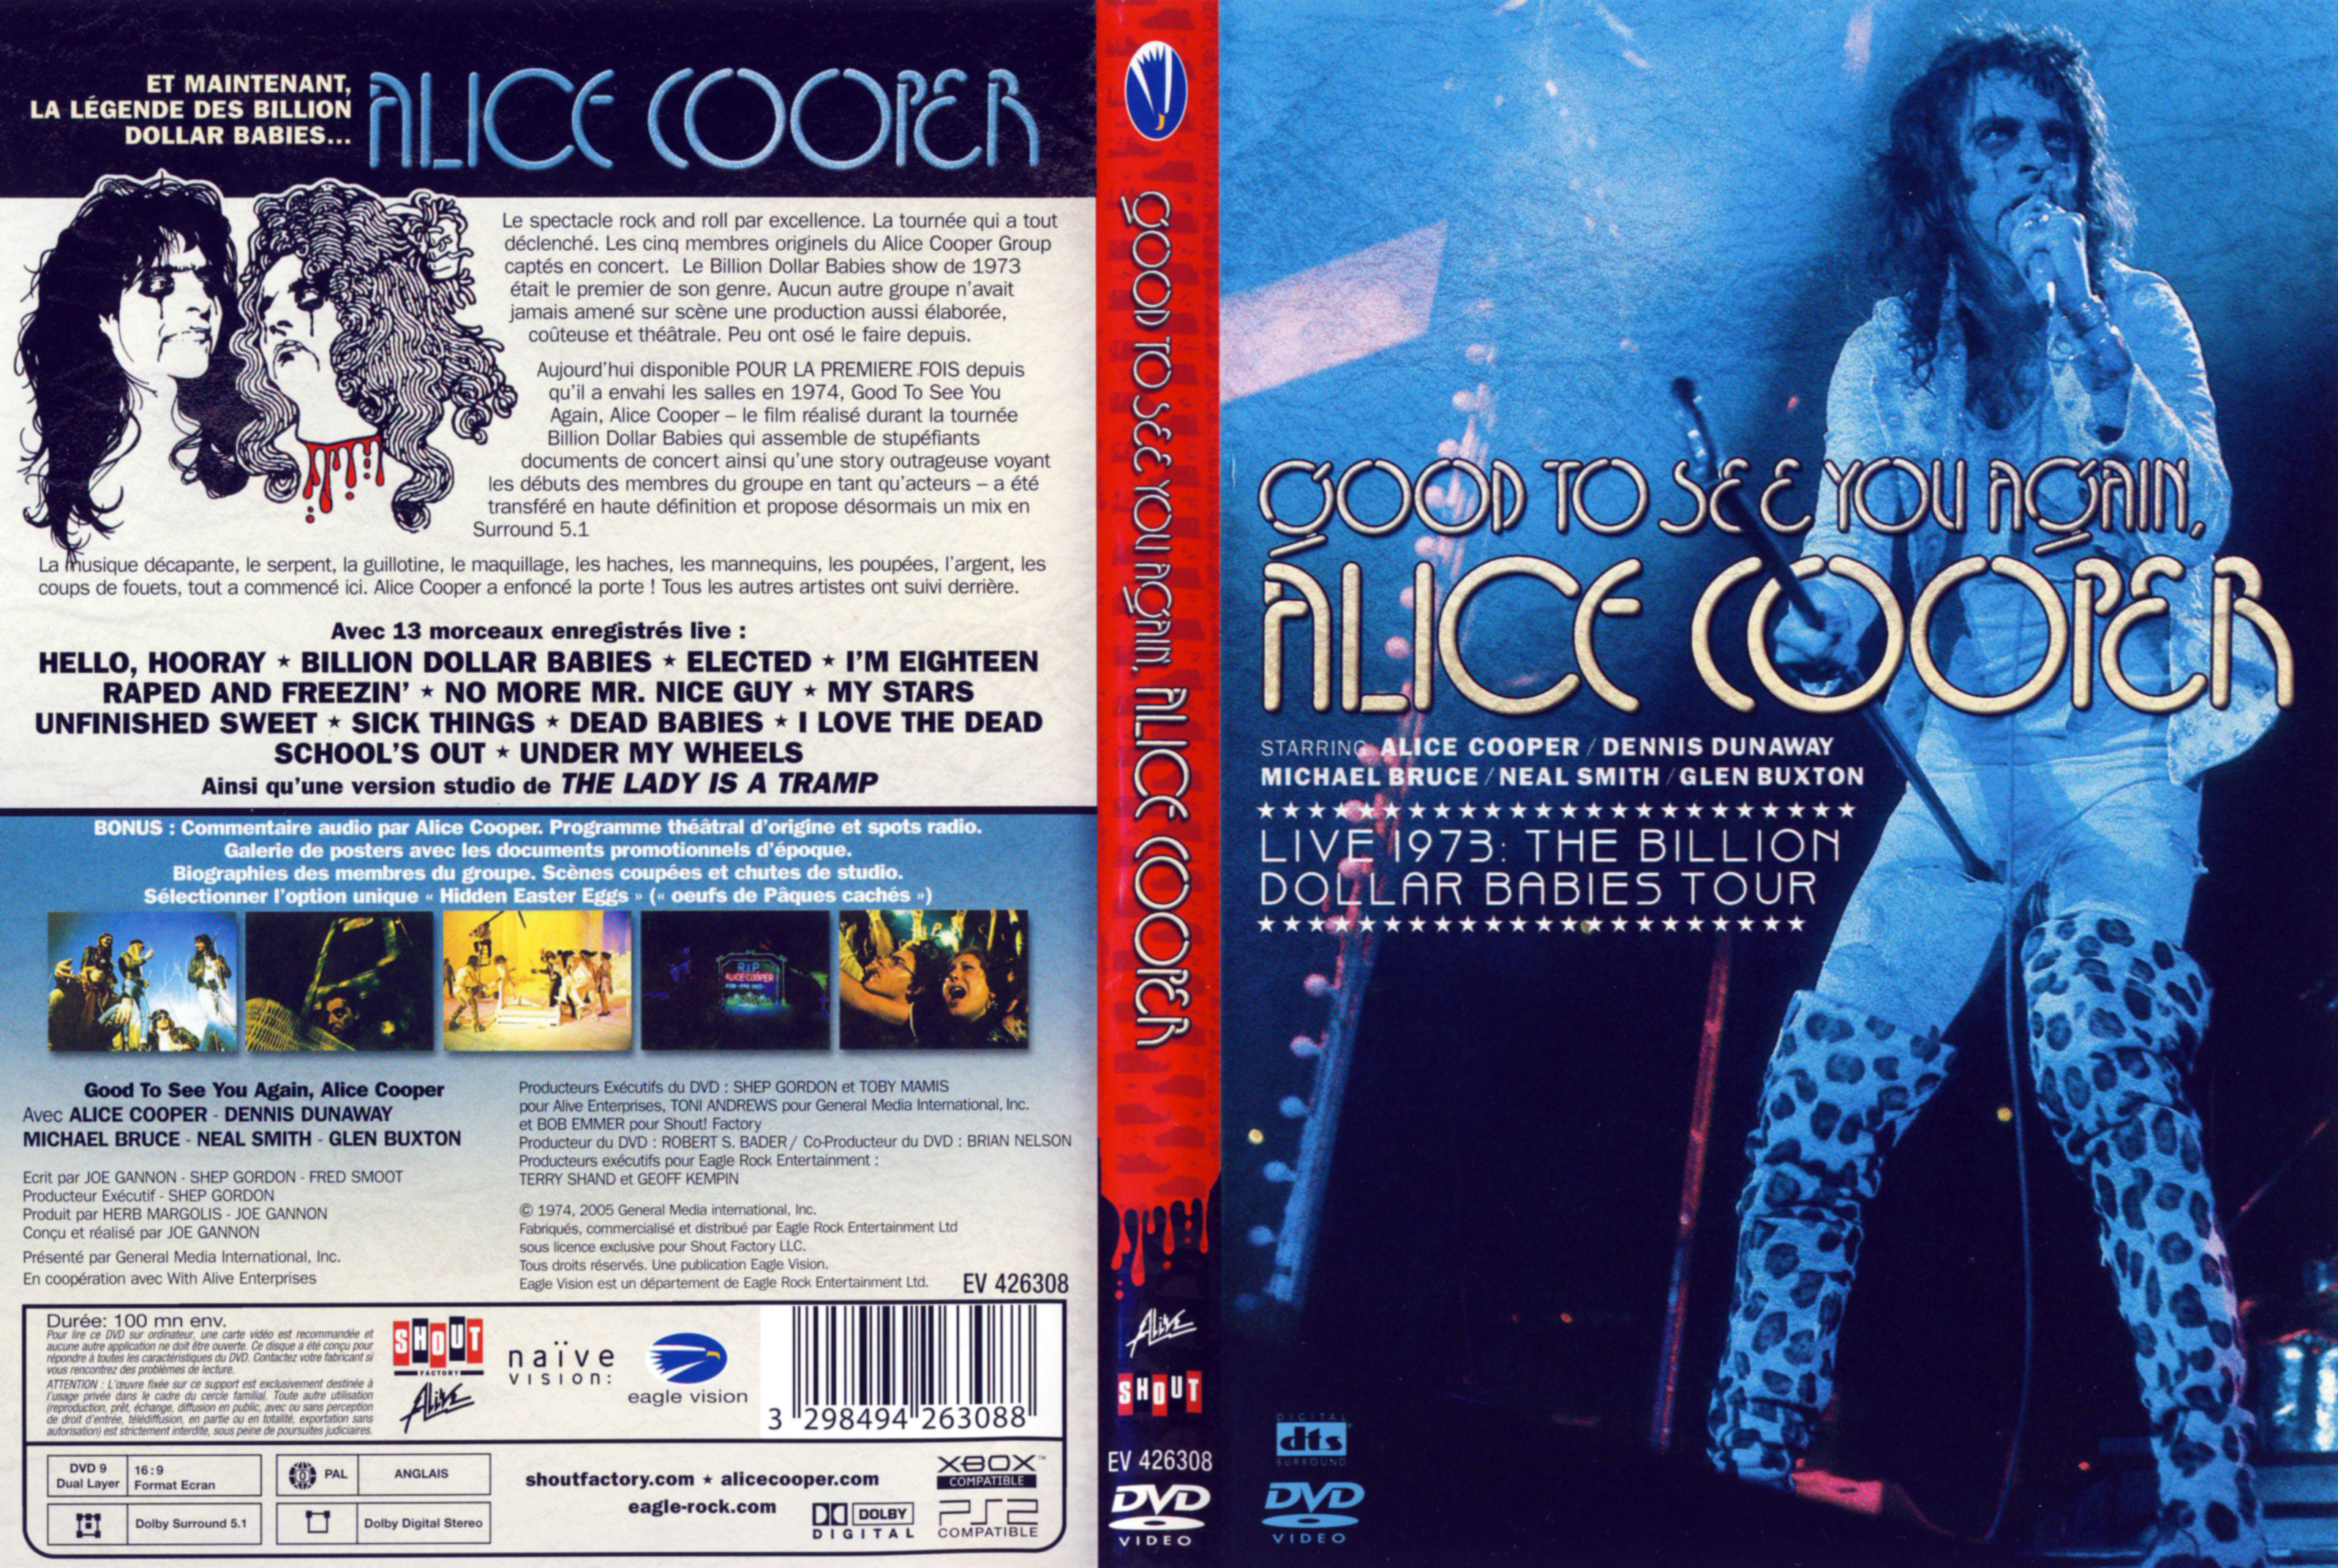 Jaquette DVD Alice Cooper Live 1973 The billion dollar babies tour